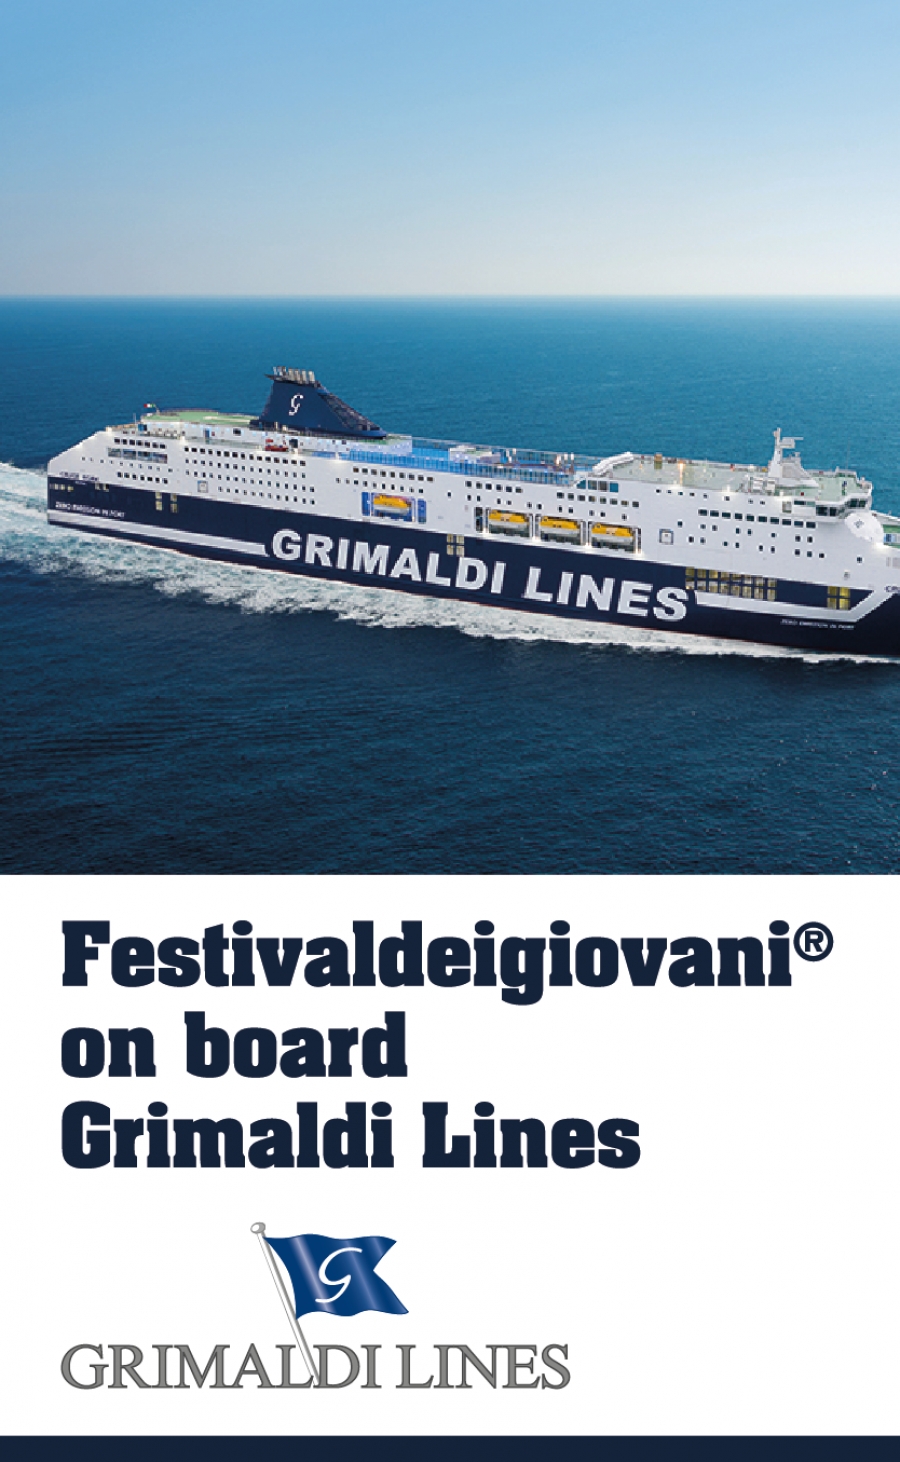 740-GRIMALDI_Festivaldeigiovani® on board Grimaldi Lines